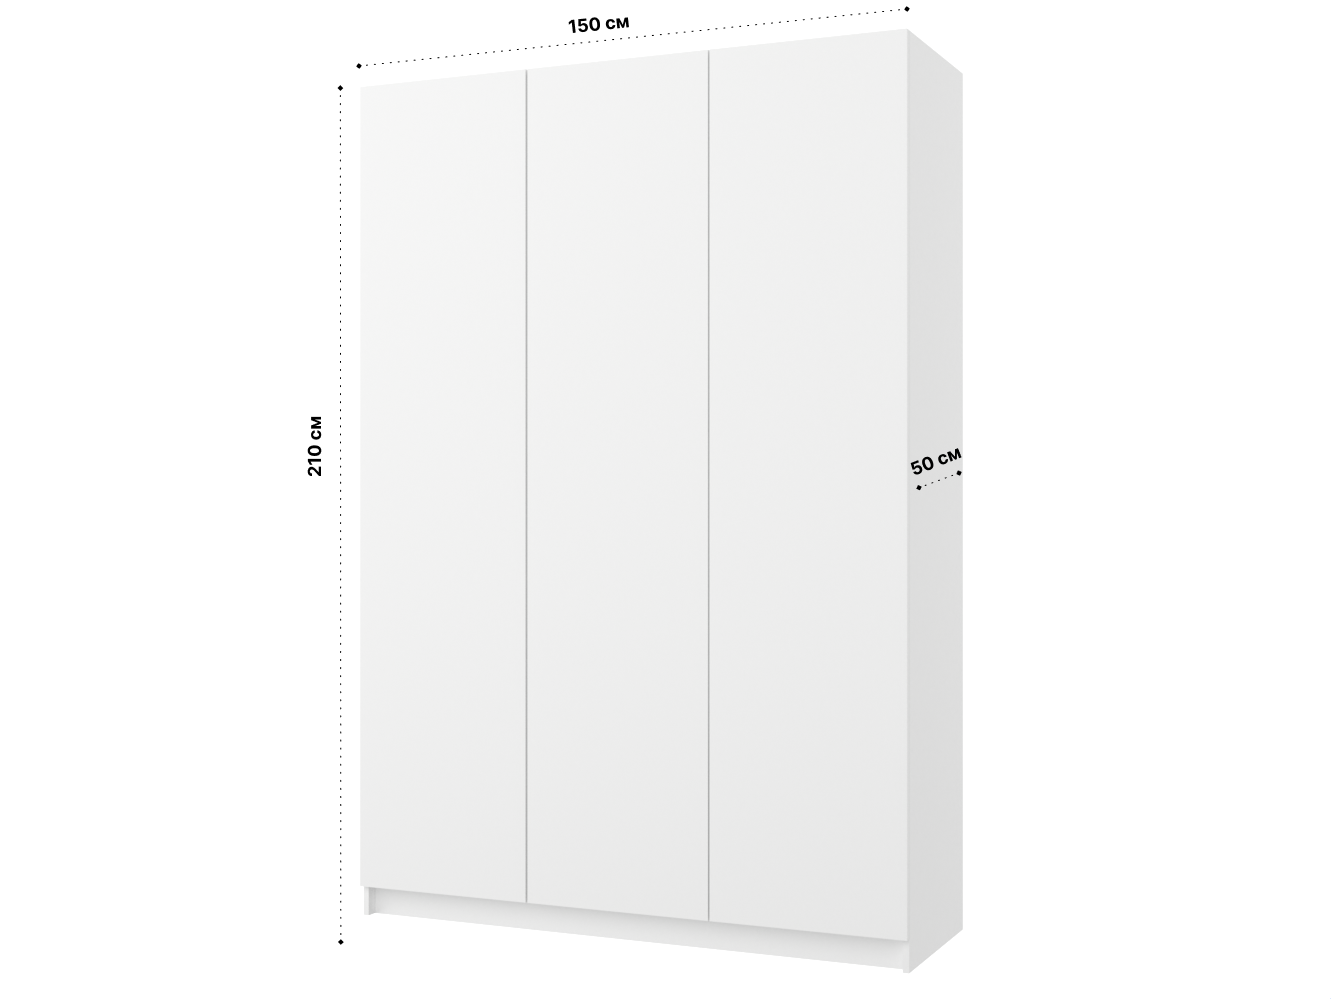 Распашной шкаф Пакс Фардал 133 white ИКЕА (IKEA) изображение товара